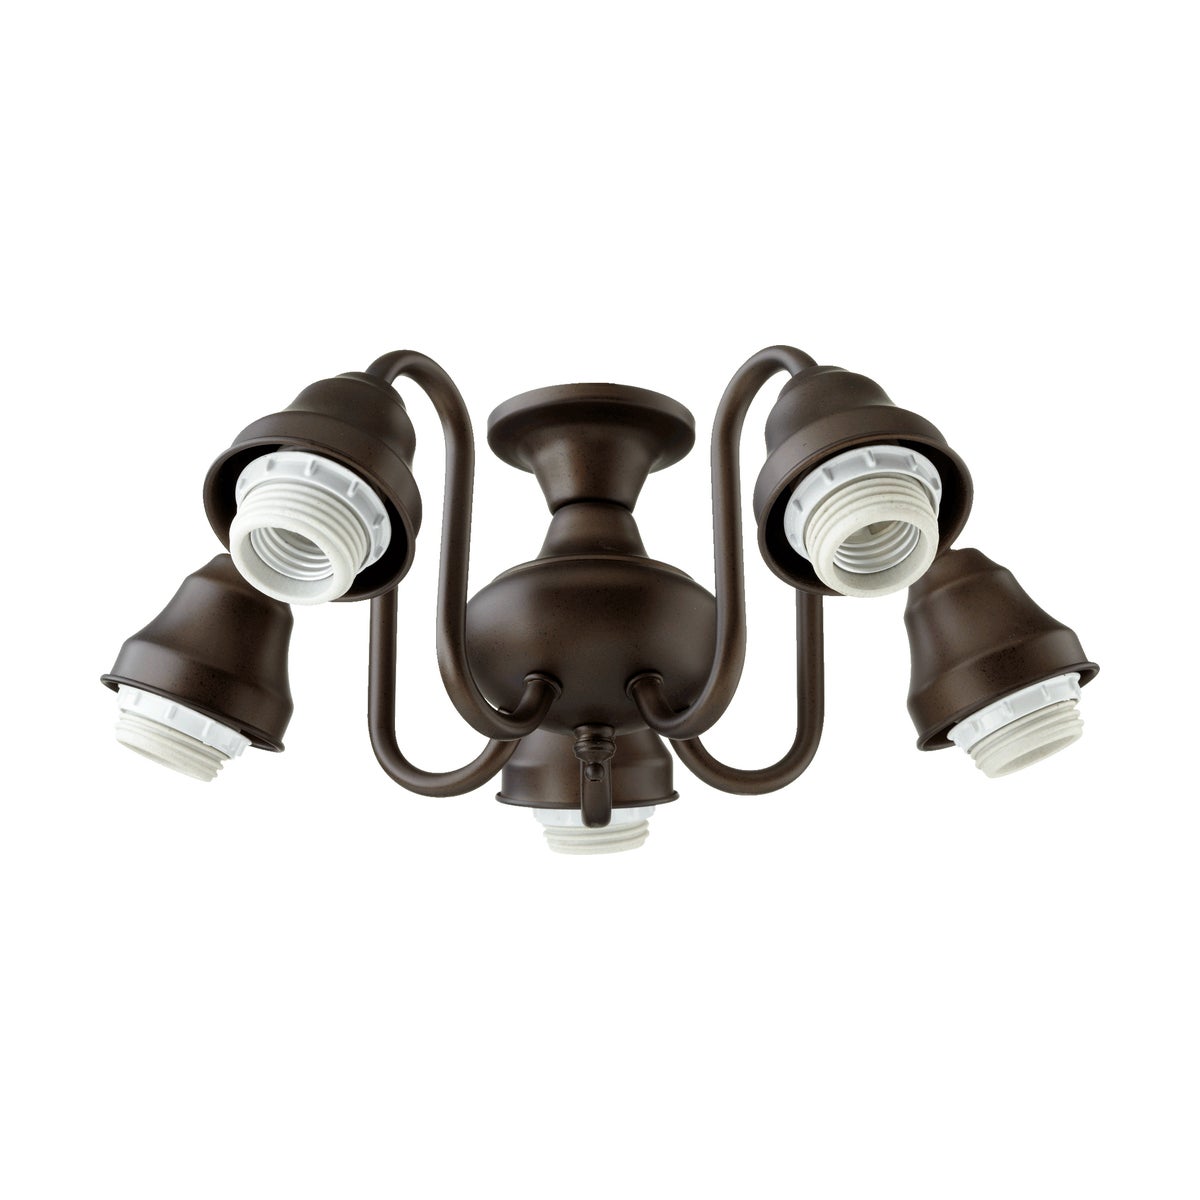 5 Light LED LK HDW - Oiled Bronze